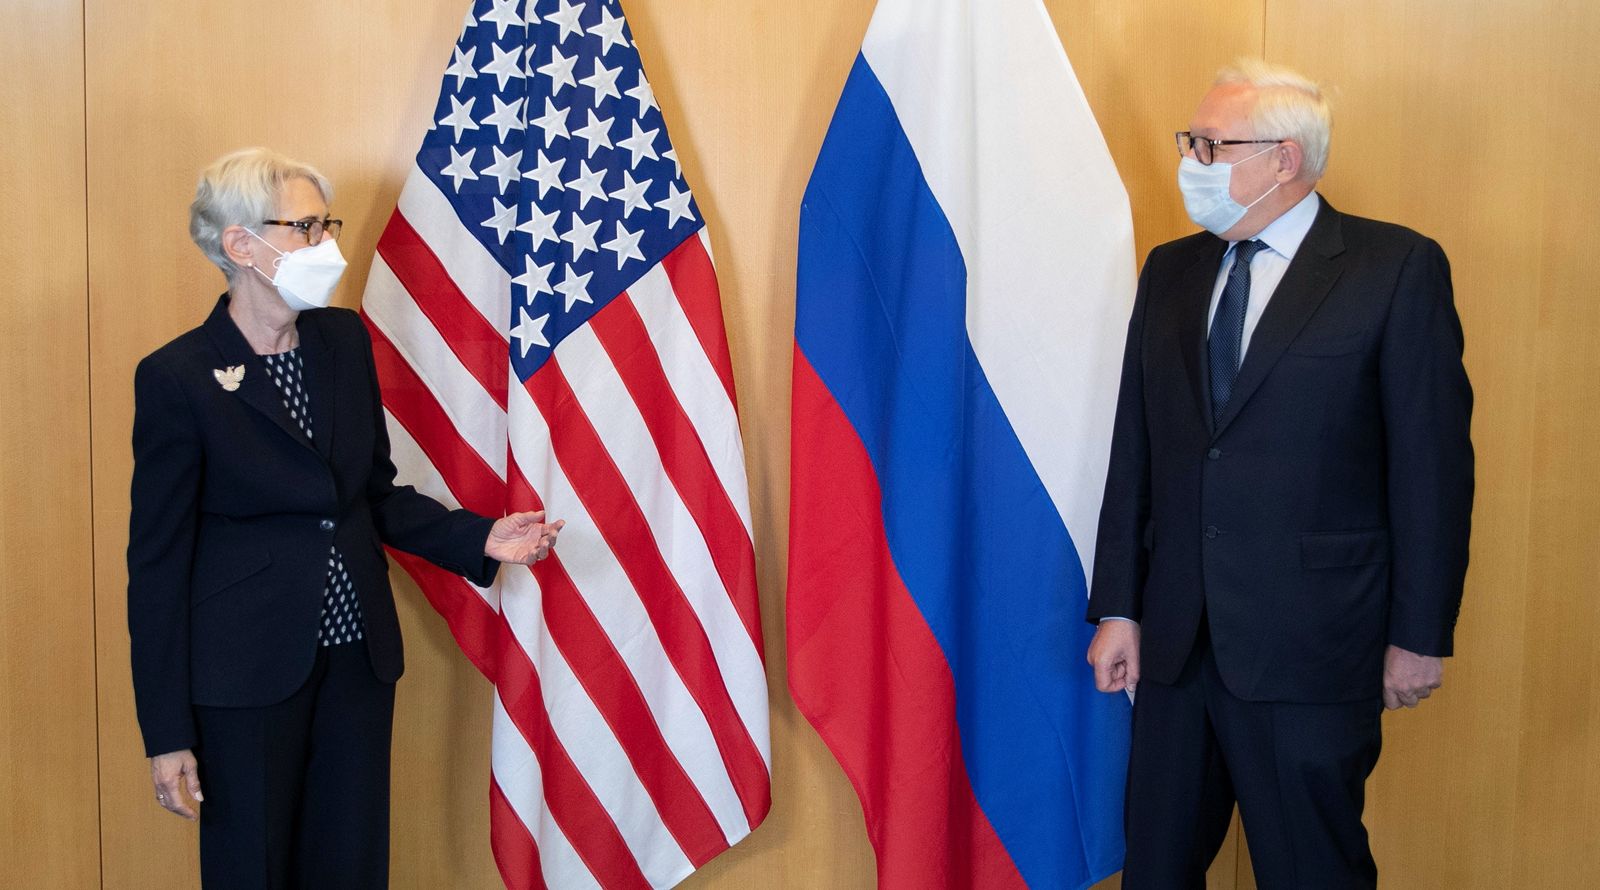 ويندي شيرمان نائبة وزير الخارجية الأميركي، بجانب سيرغي ريابكوف نائب وزير الخارجية الروسي، قبيل اجتماع في جنيف، 28 يوليو 2021 - REUTERS